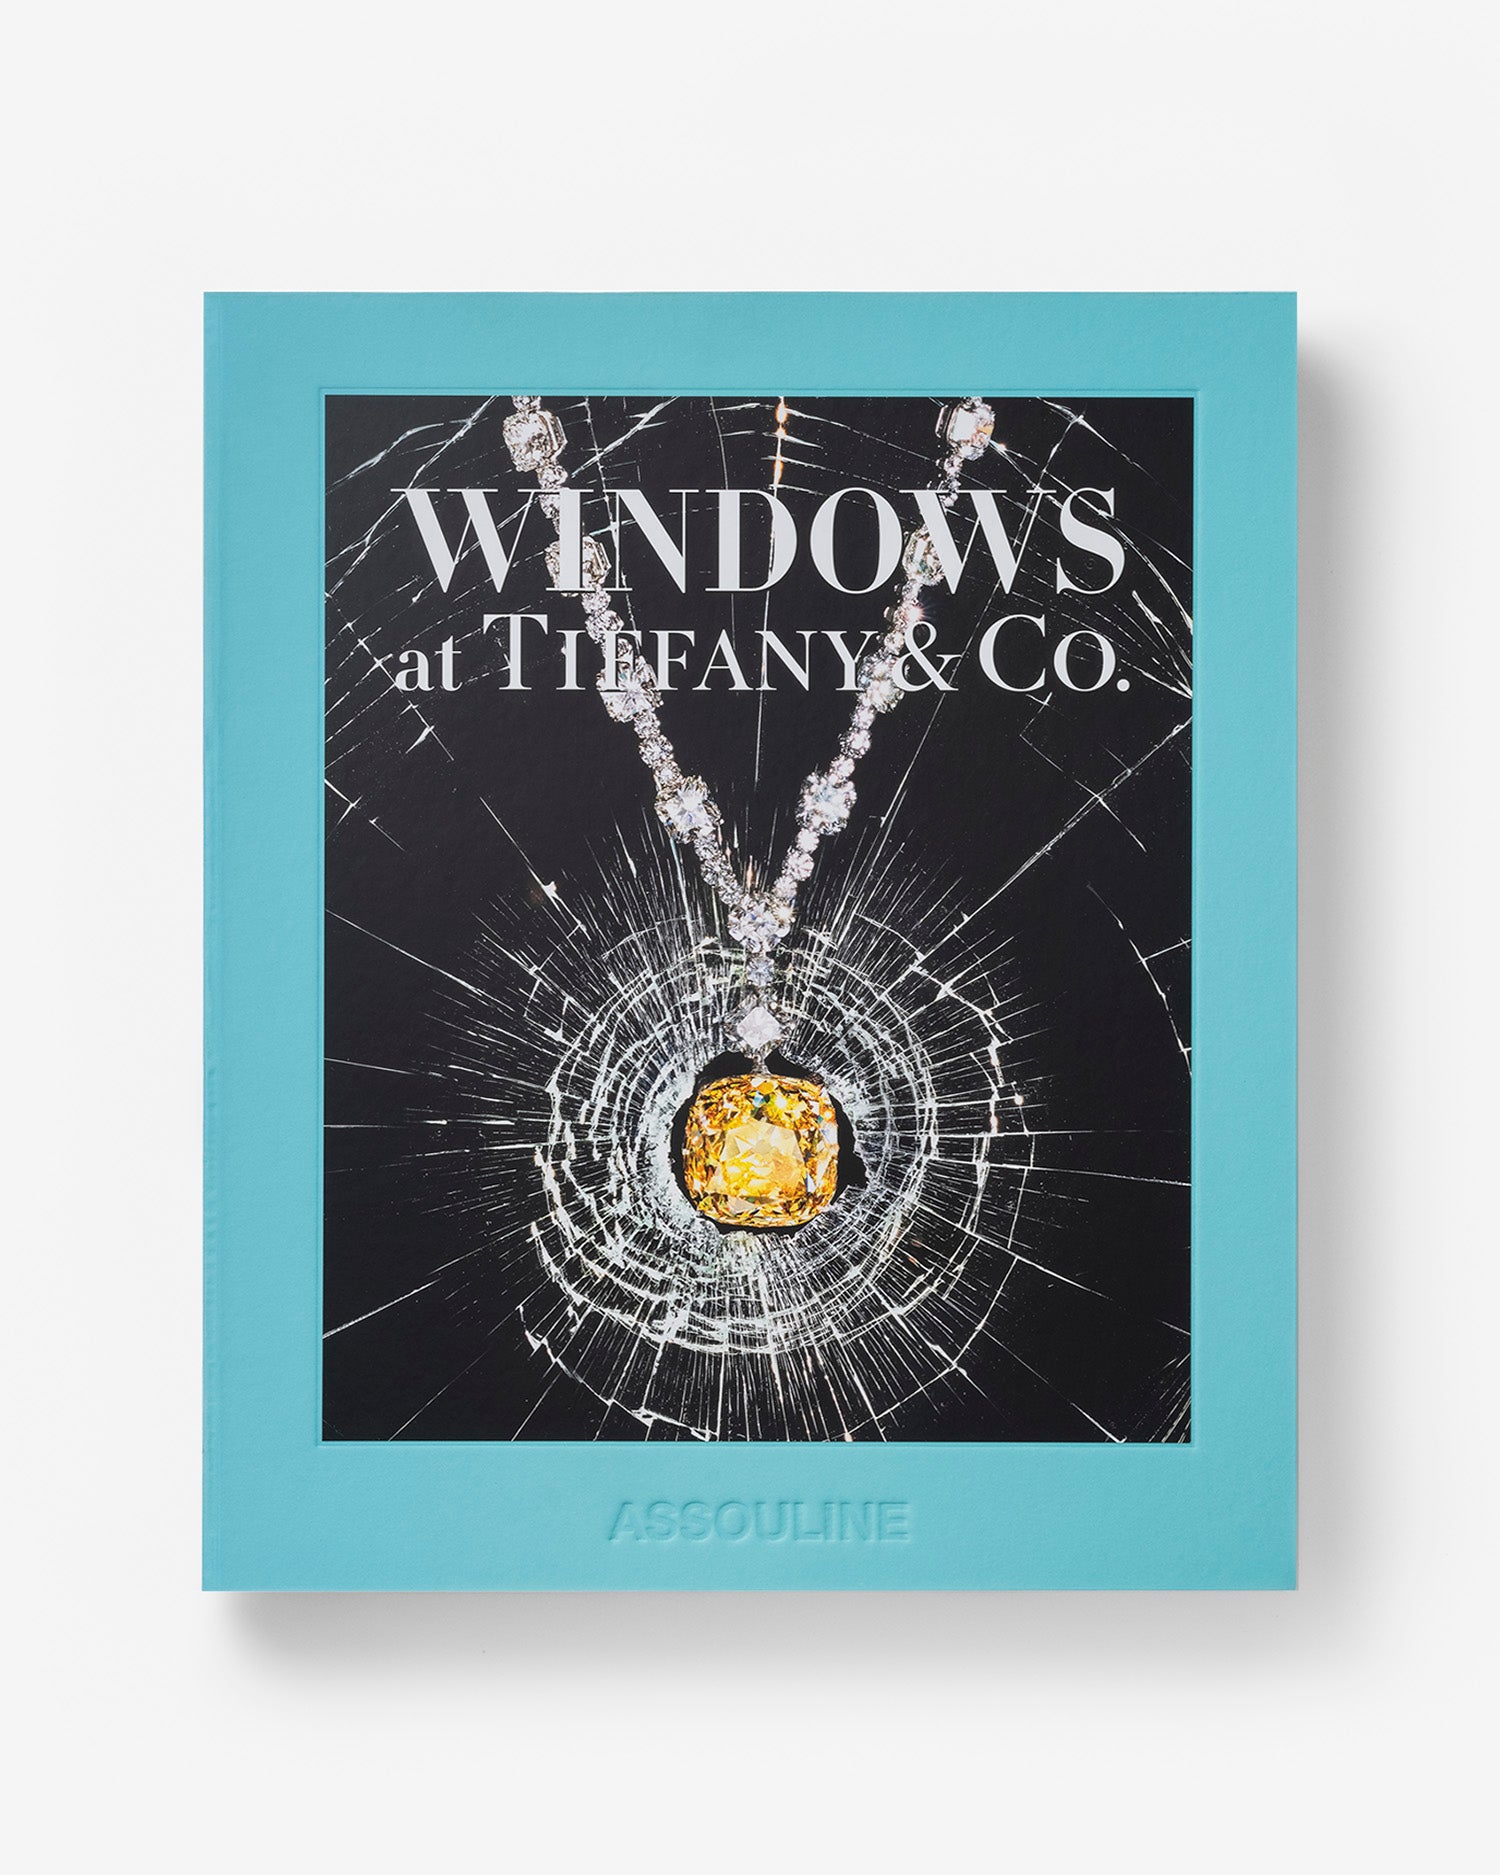 Windows at Tiffany & Co.